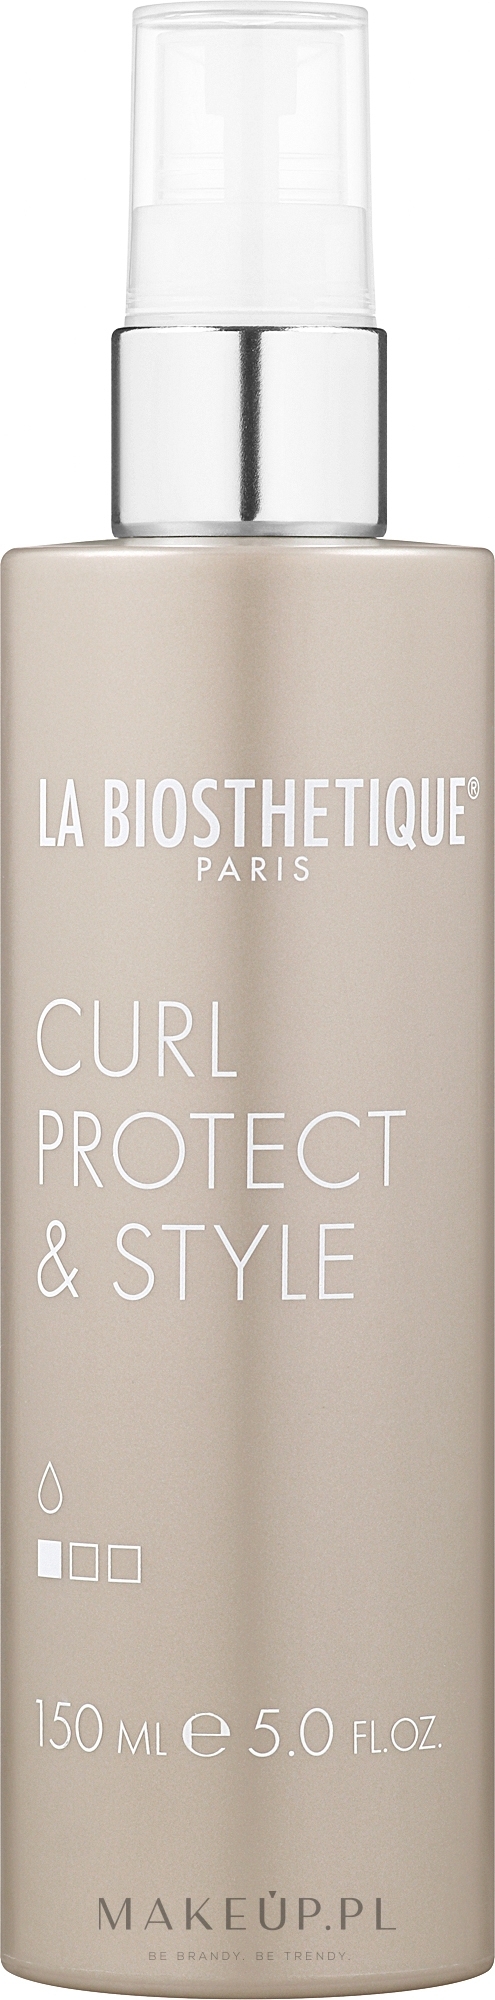 Termoaktywny spray do stylizacji - La Biosthetique Curl Protect&Style — Zdjęcie 150 ml